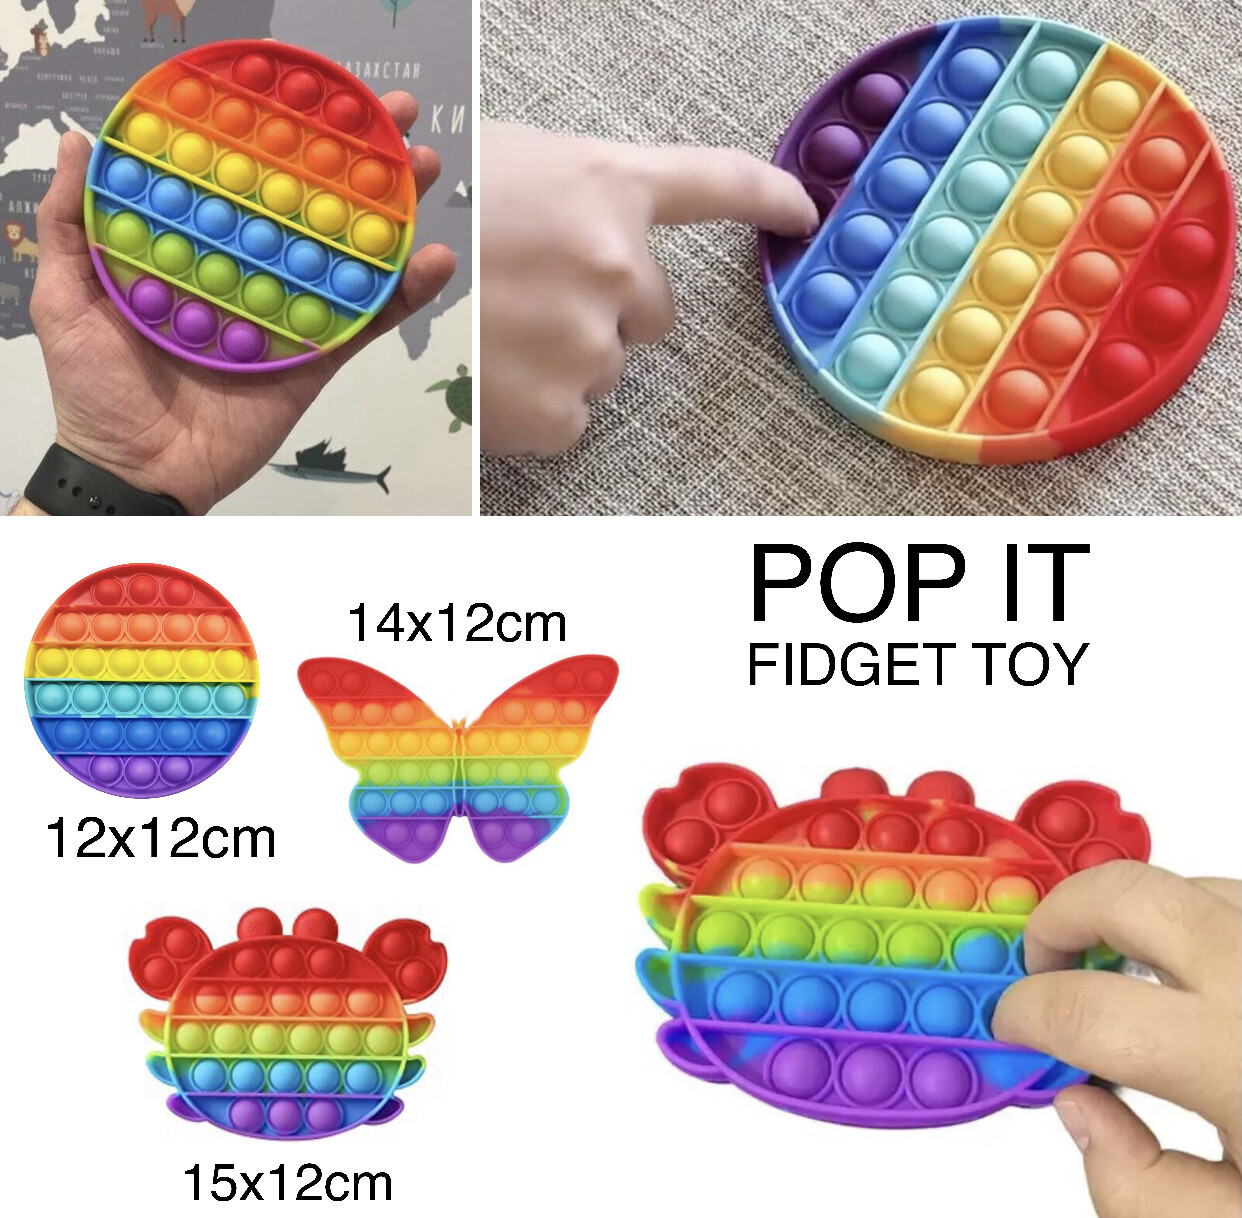 Pop It Fidget Toy